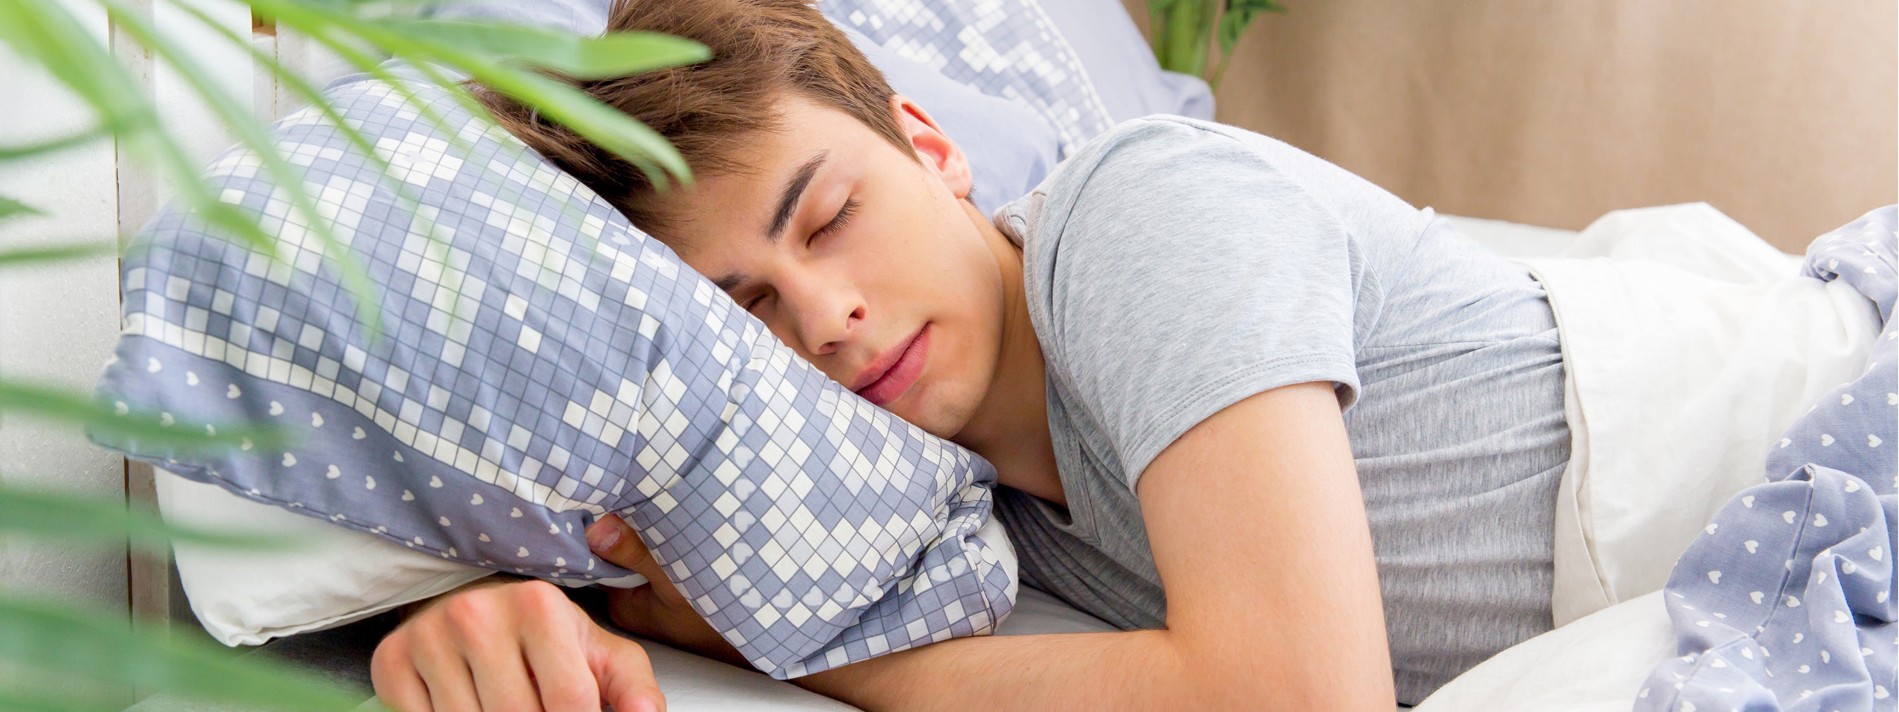 Junger Mann Anfang 20 liegt gemütlich im Bett und schläft.